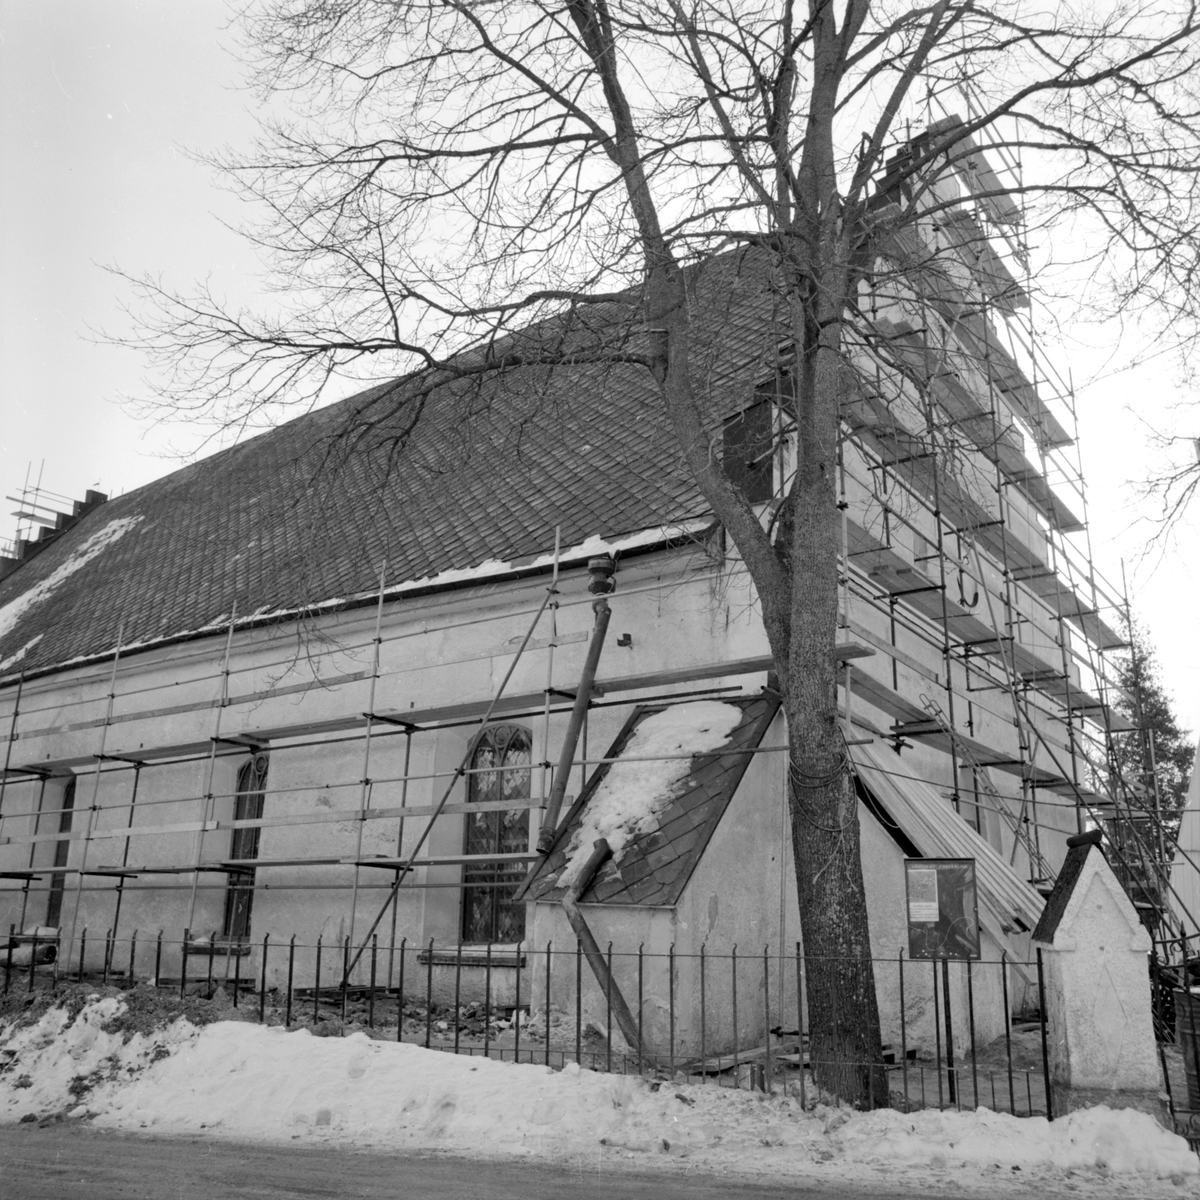 Drothems kyrka anlades på den högsta punkten inom Söderköpings centrala delar. Att läget lockade är förståerligt men platsens leriga grundförhållandena var inte lämpliga för en så stor och tung byggnad. Återkommande åtgärder har över tid varit av nöden. Den senast genomgripande grundförstärkningen genomfördes 1979-80. I samband med arbetet genomfördes en rad andra insatser, bland annat ersattes den tidigare spritputsen av slätputs.